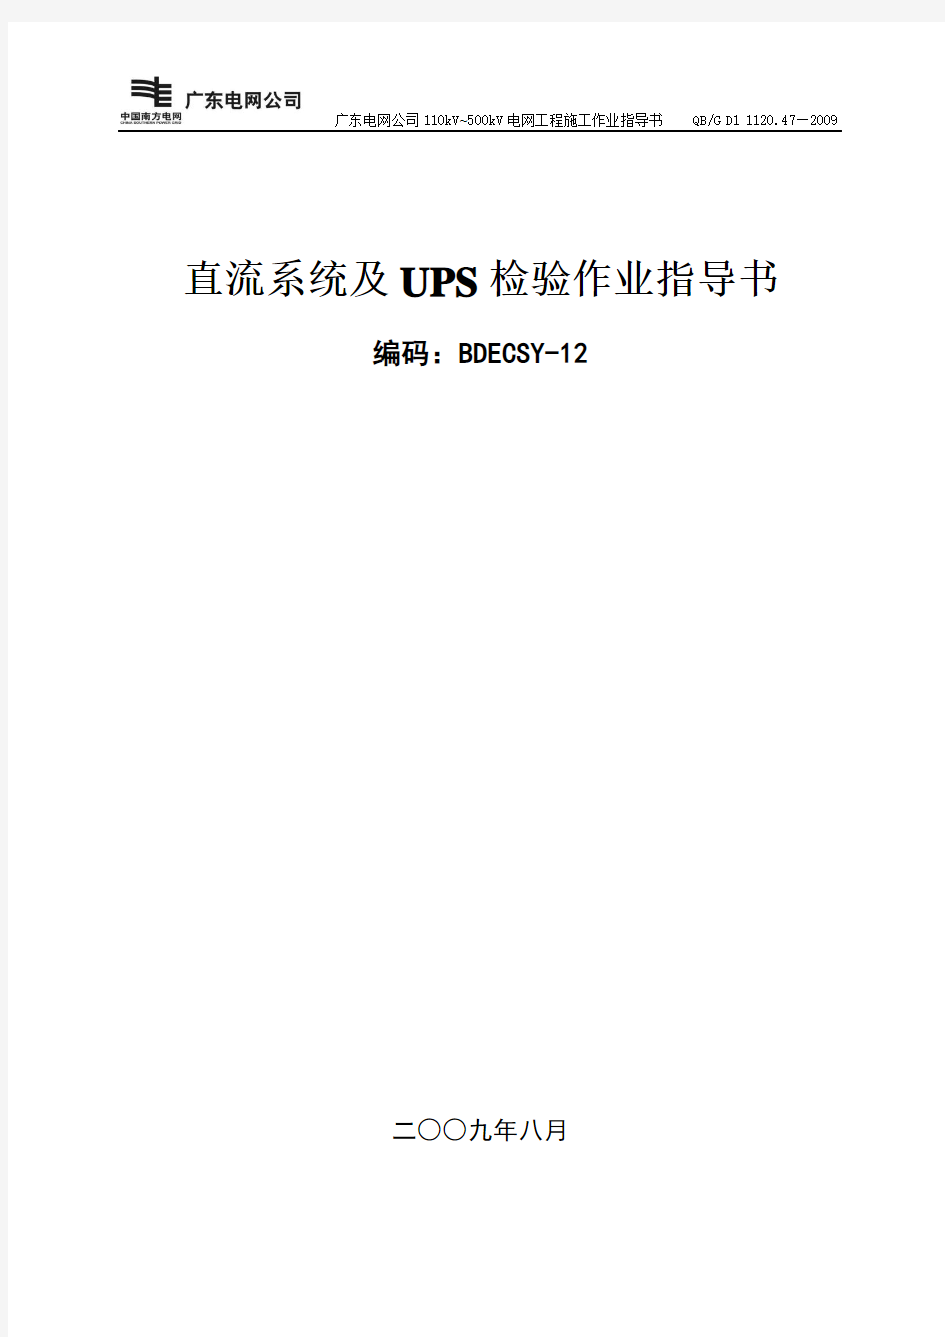 直流系统及UPS装置检验作业指导书BDECSY-12